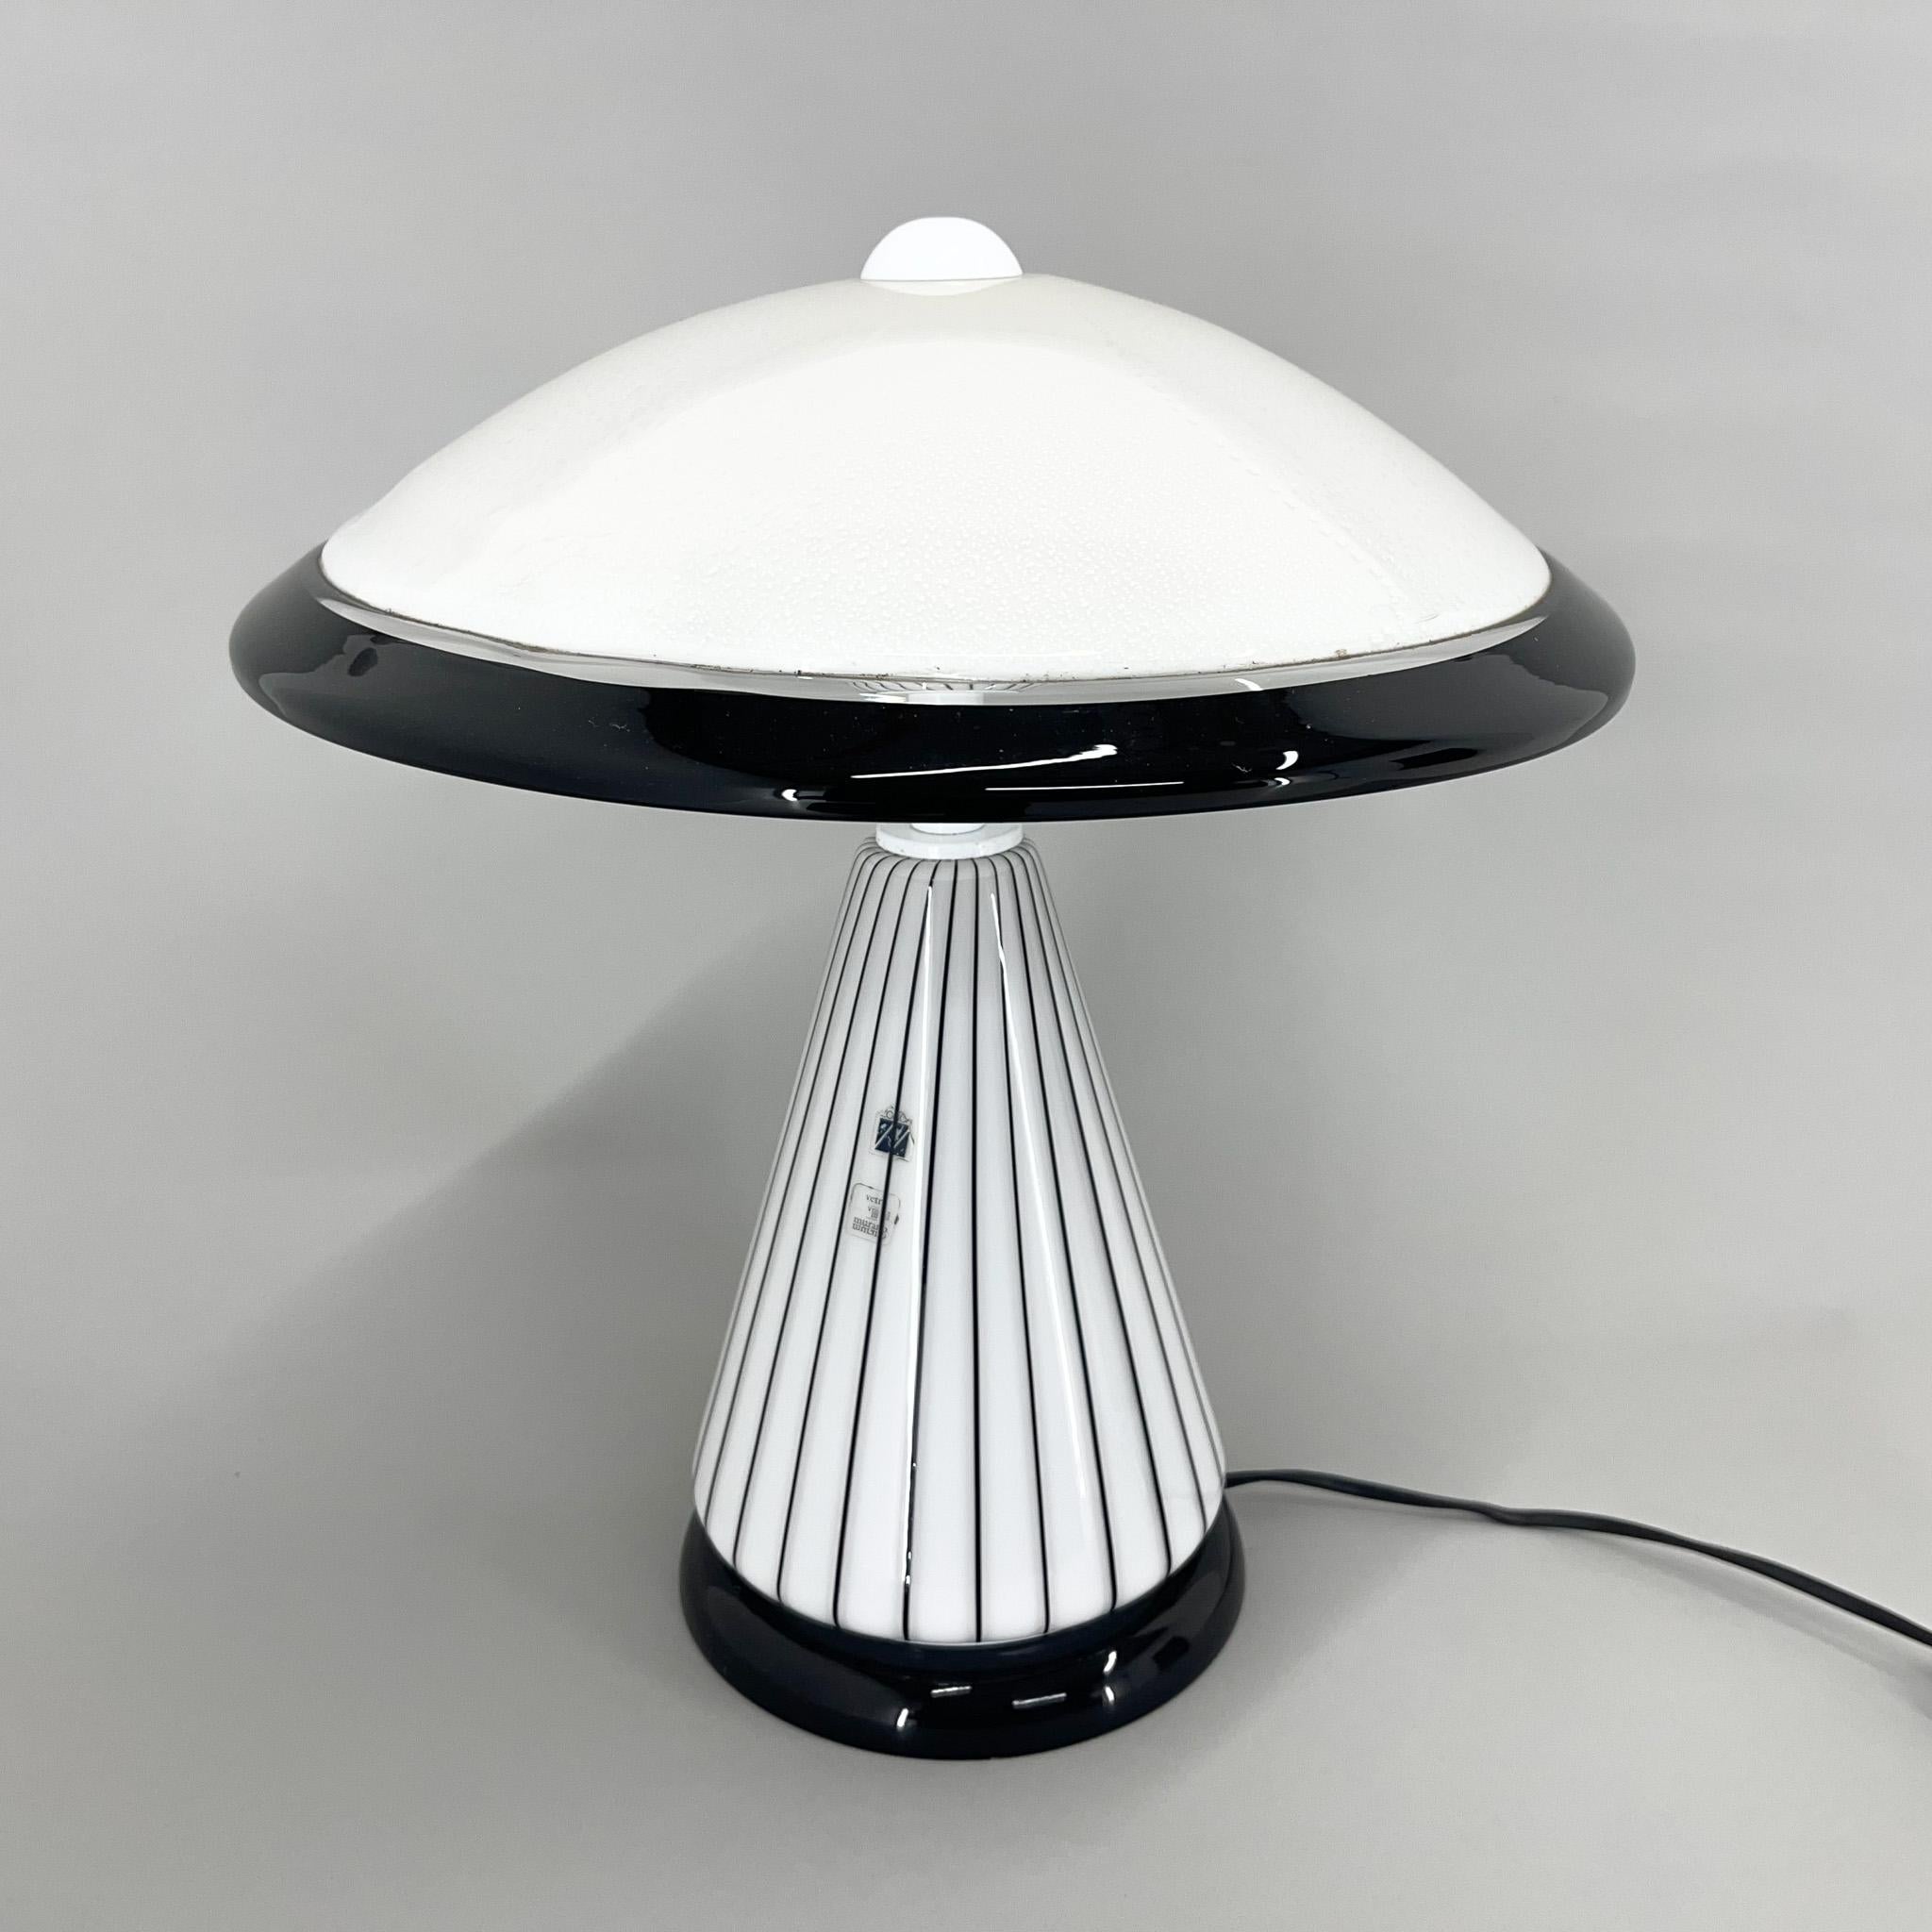 Rare lampe de table en verre Vetri Murano noir et blanc de Zonca (voir étiquette). Très bon état vintage, fabriqué en Italie dans les années 1980.